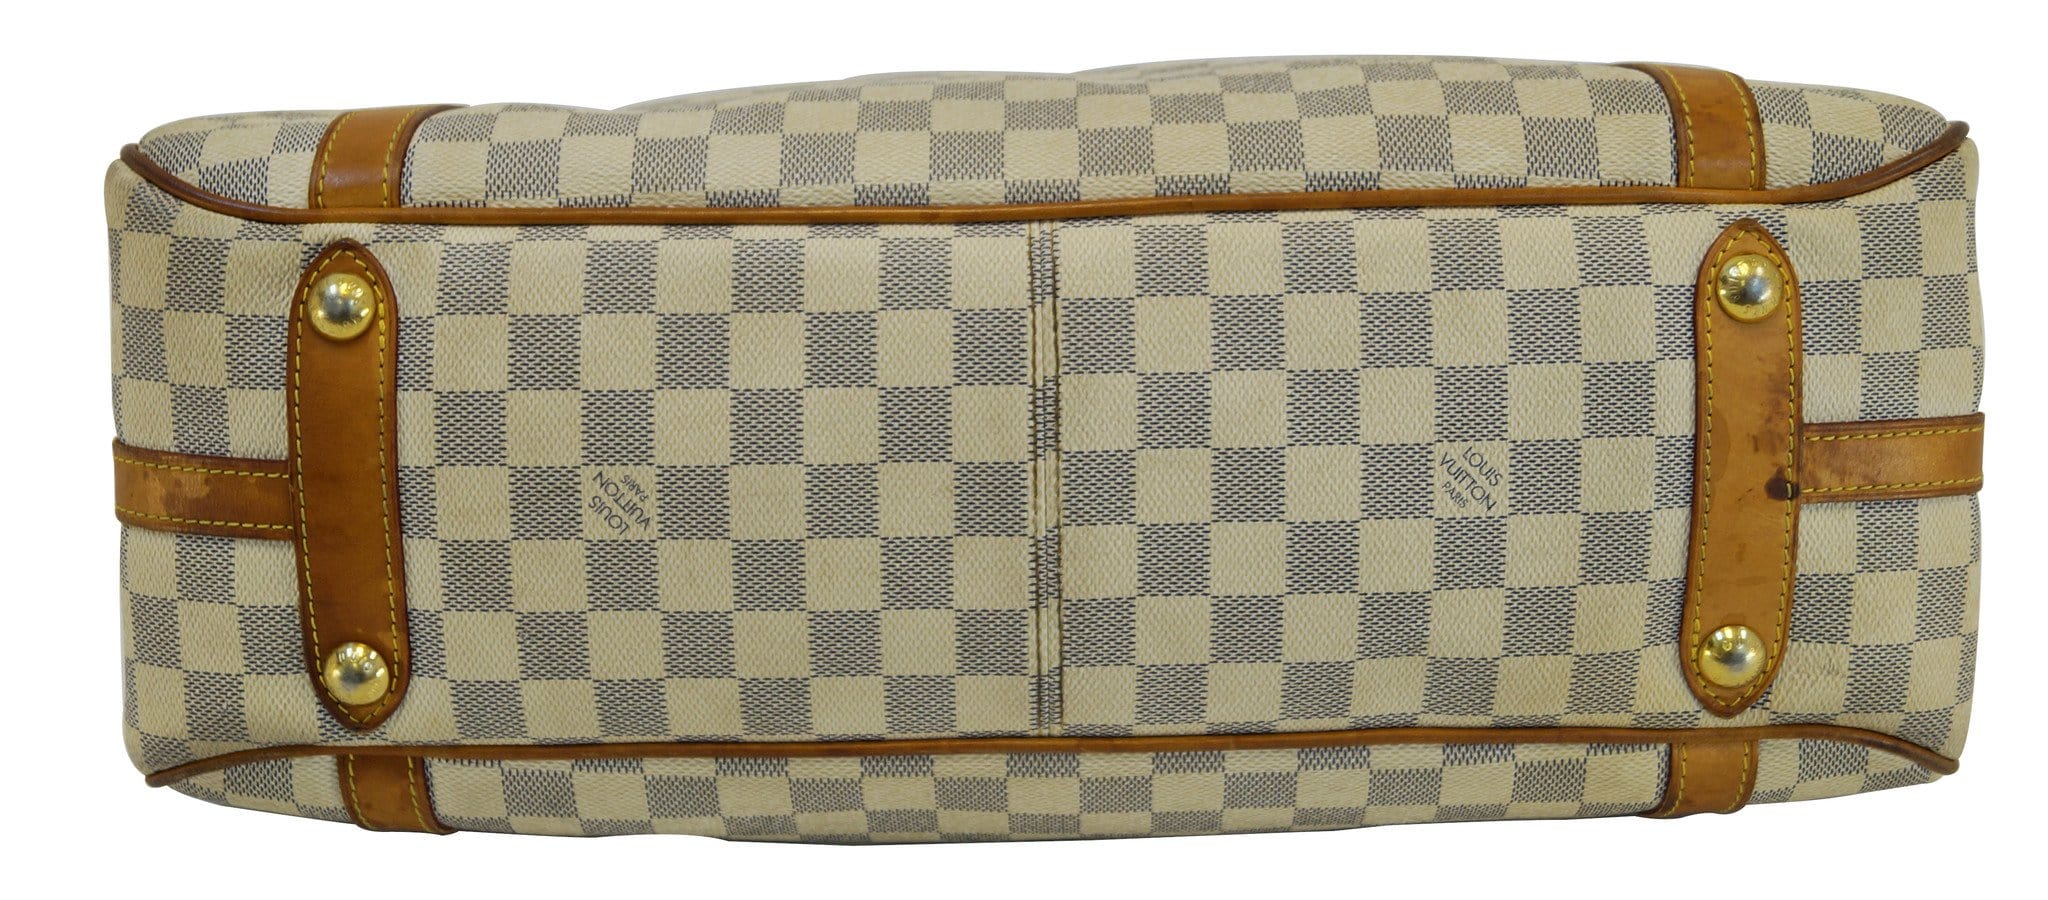 Louis Vuitton Louis Vuitton Stresa PM Damier Azur Canvas Shoulder Bag